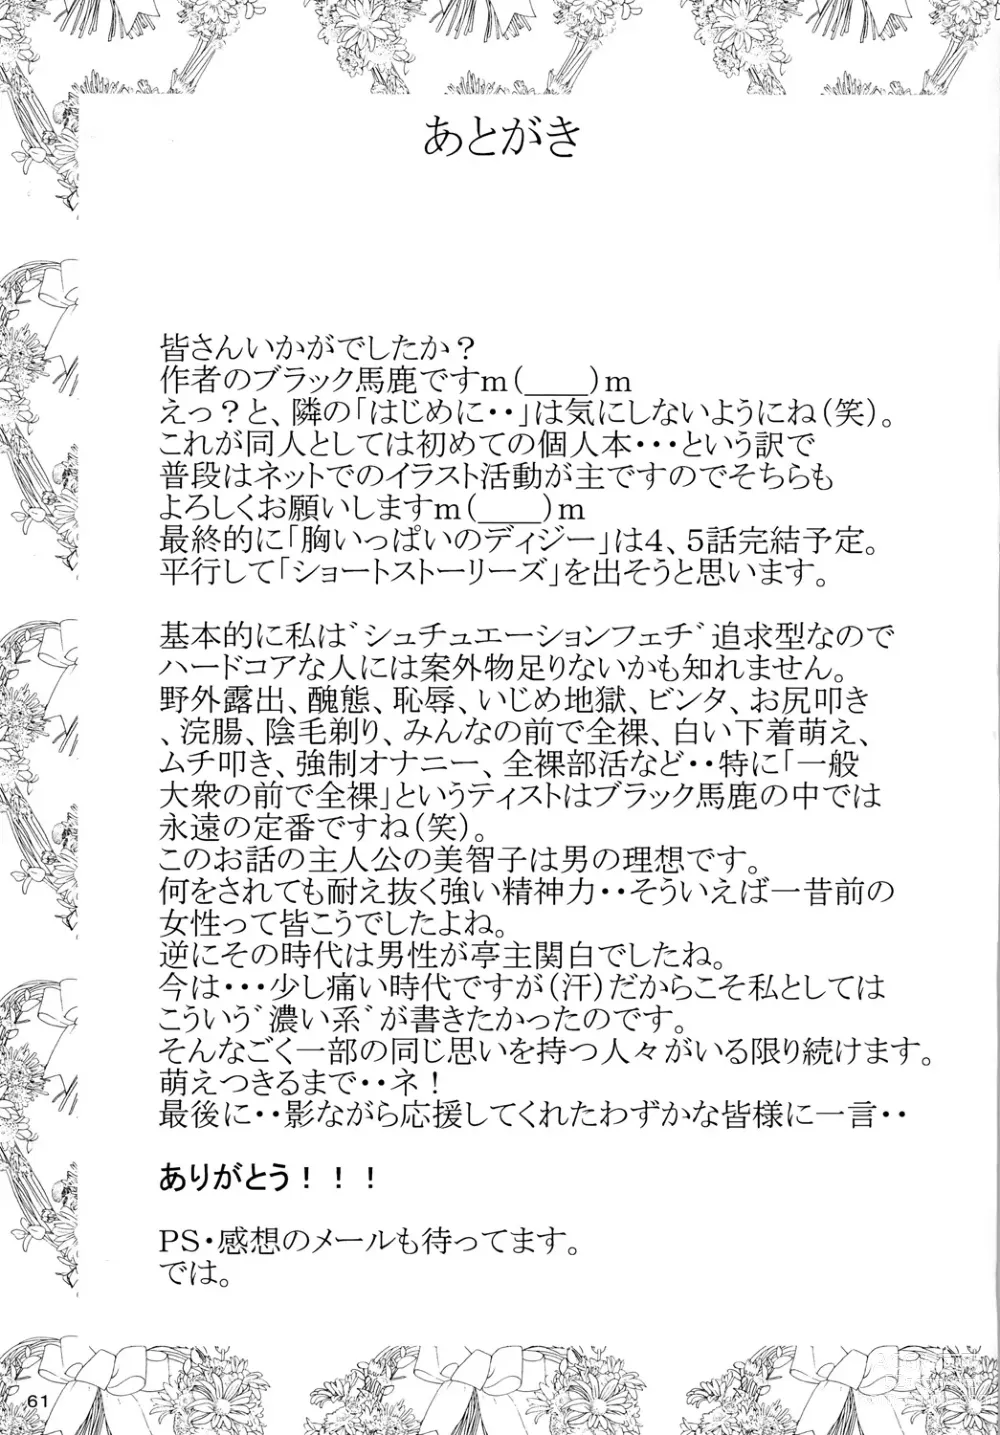 Page 60 of doujinshi Mune Ippai no Dizzy